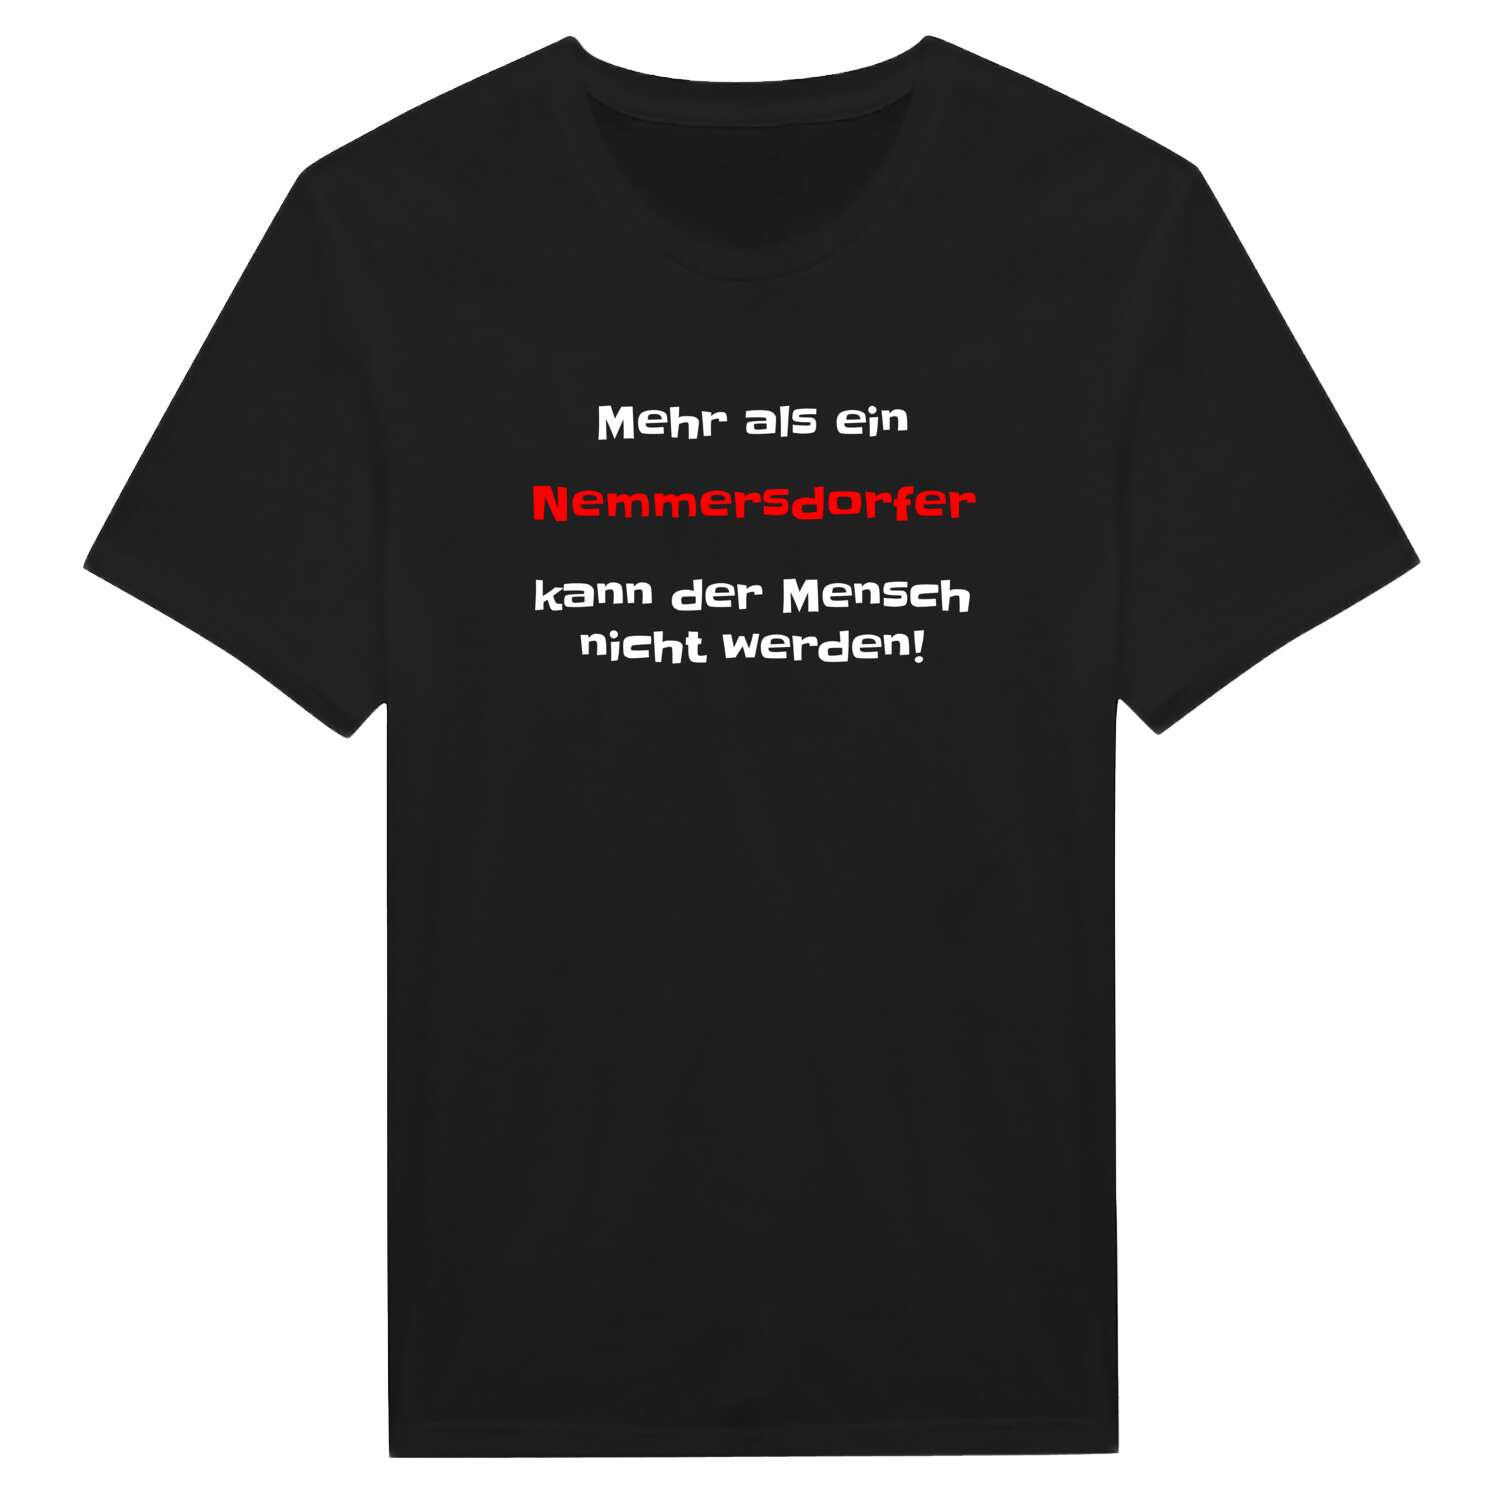 Nemmersdorf T-Shirt »Mehr als ein«